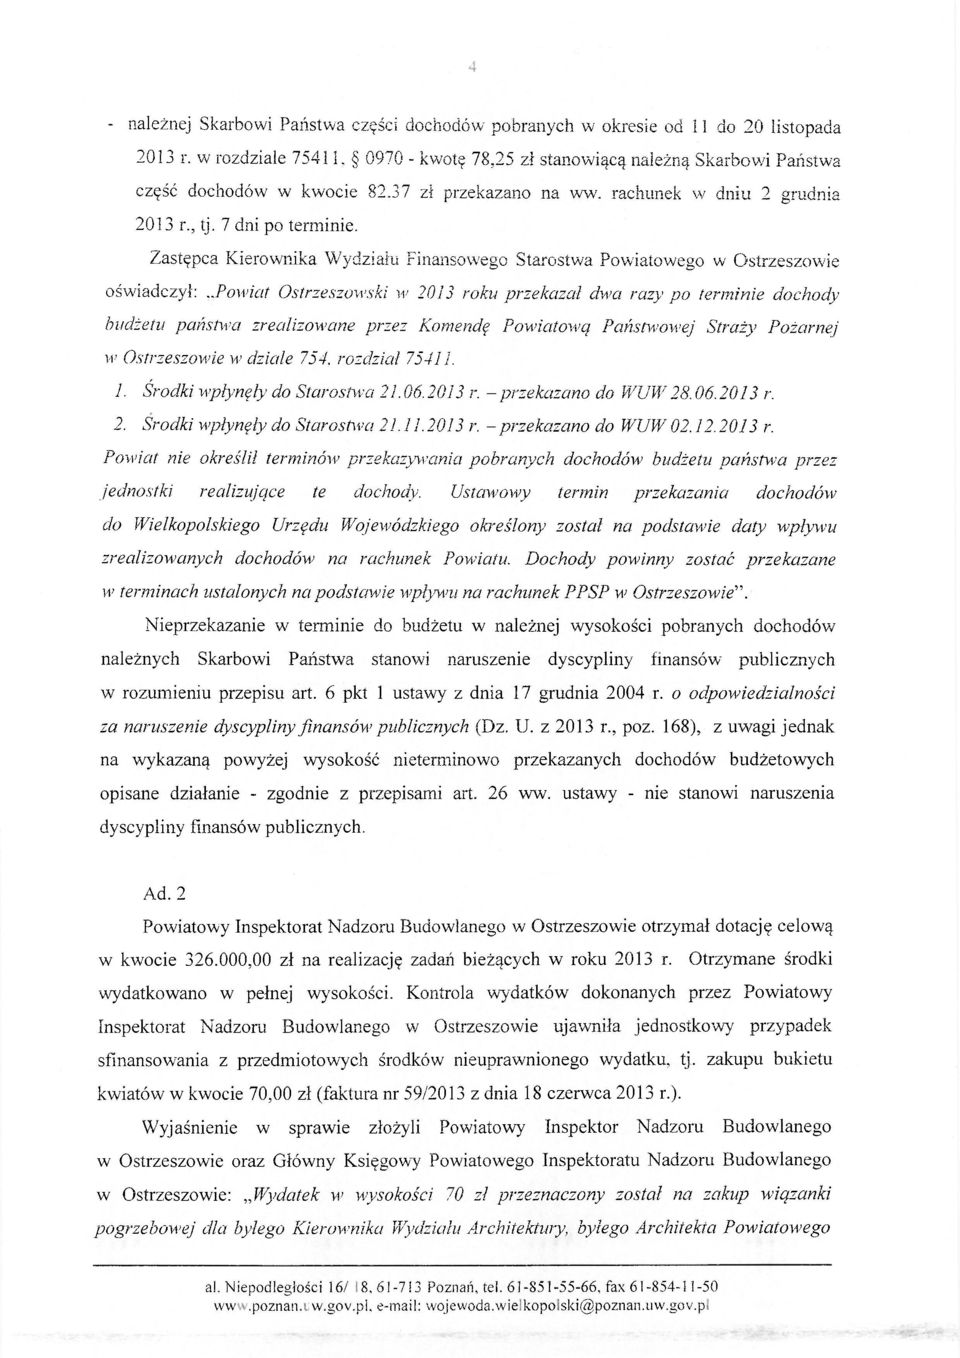 .powiat Ostrzeszówski w 2013 roku przekazał dwa razy po terminie dochody budżetu państwa zrealizowane przez Komendę Powiatową Państwowej Straży Pożarnej w Ostrzeszowie w dziale 754. rozdział 75411. 1.